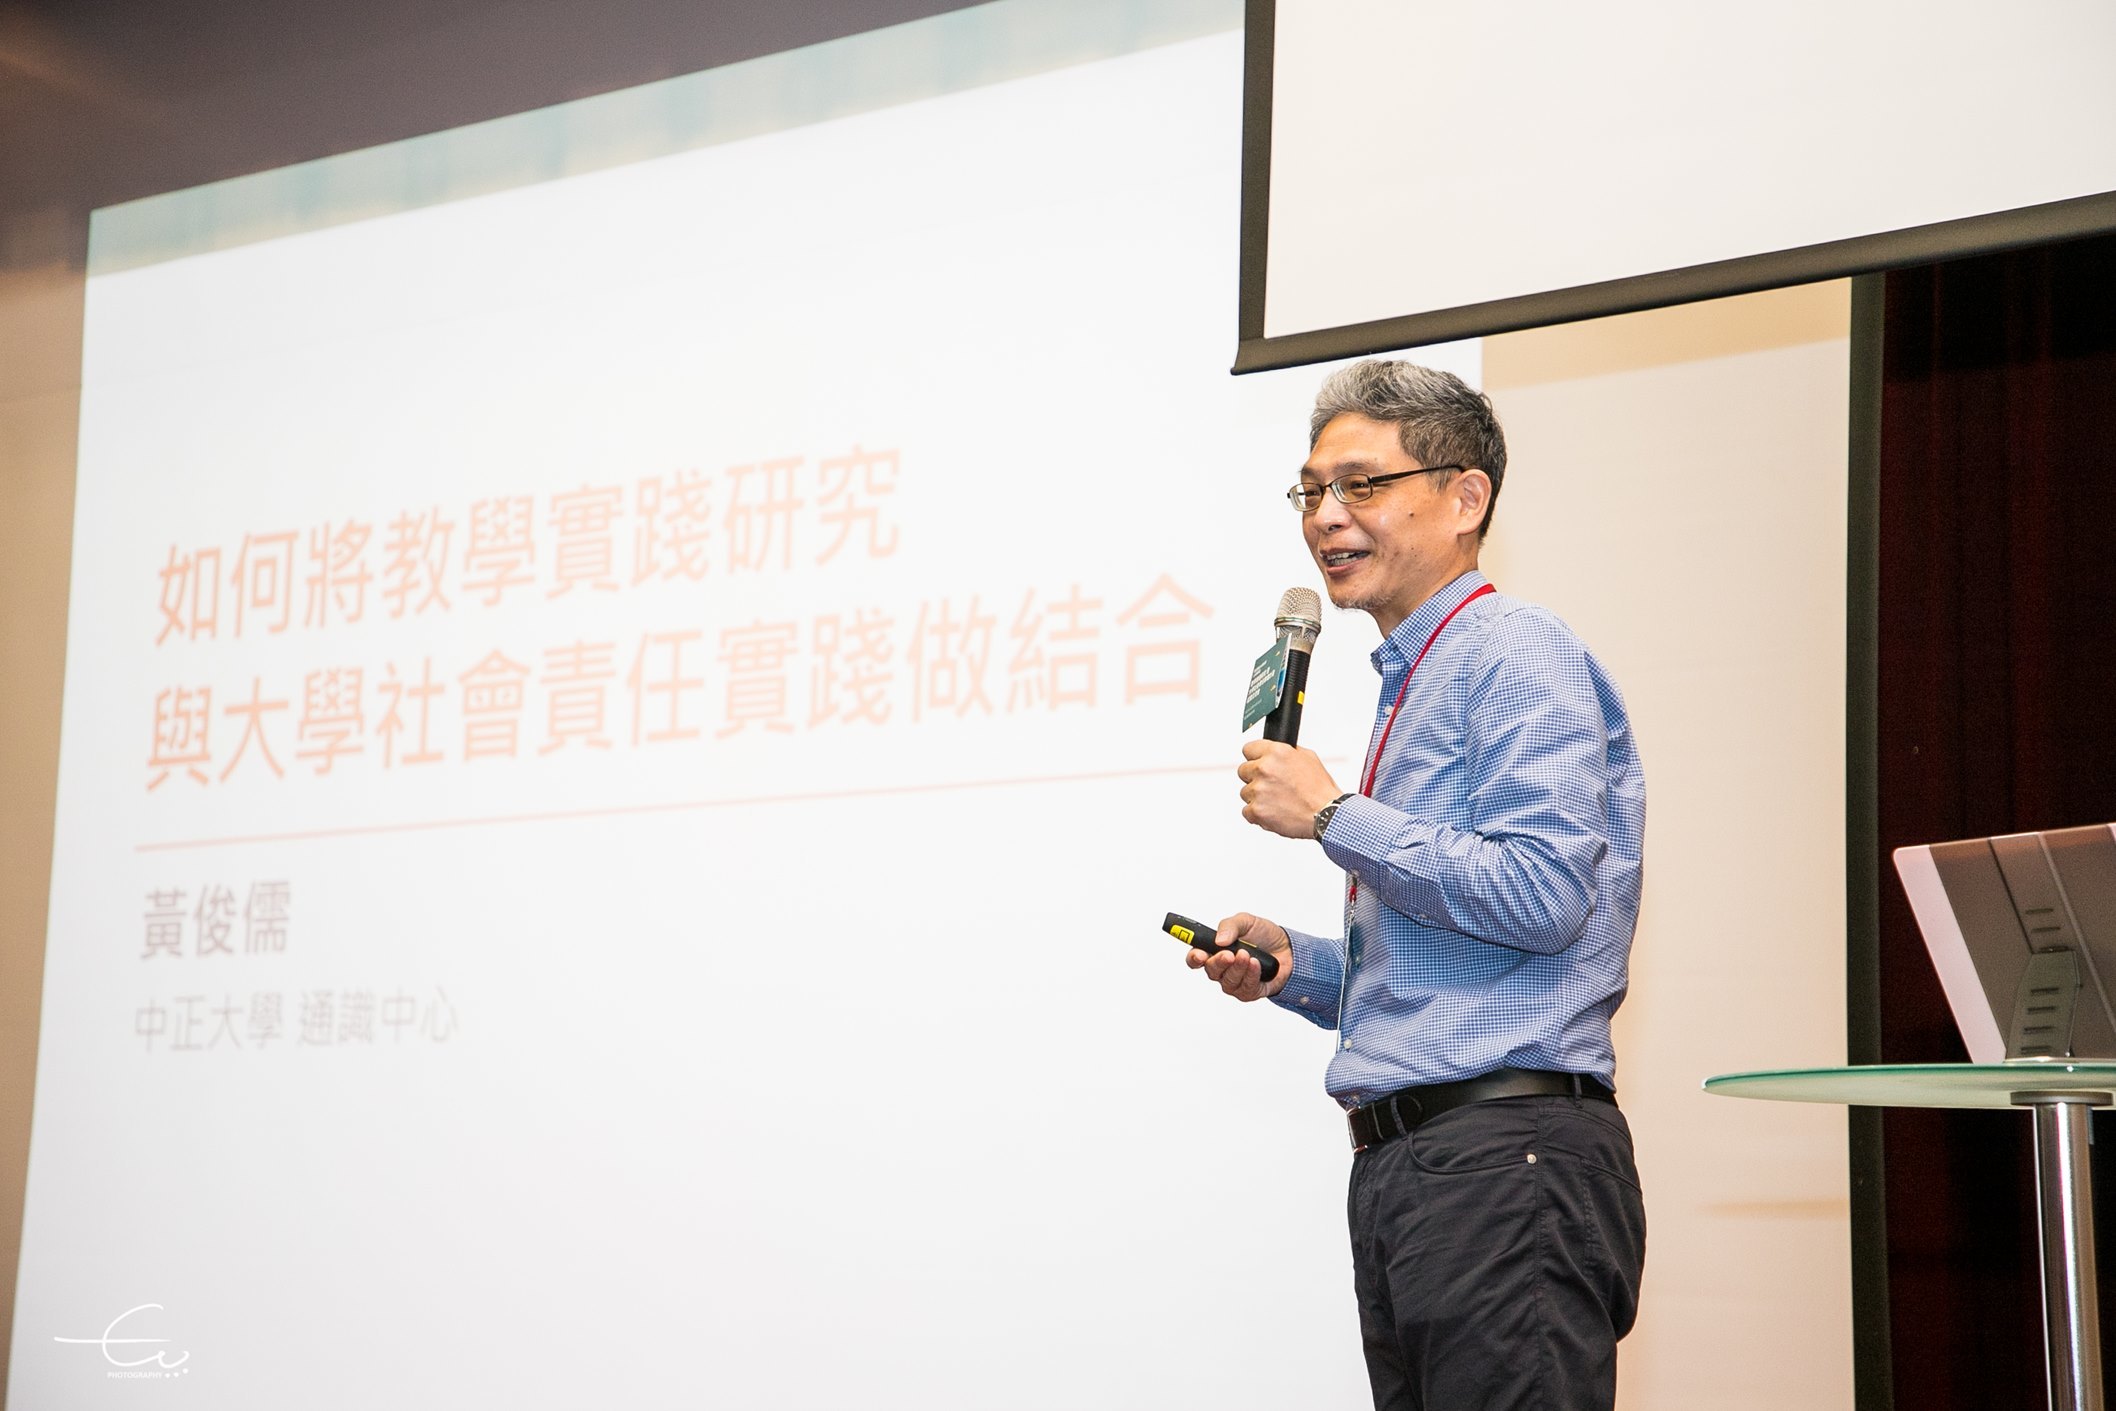 黃俊儒教授期望透過強化大學的教學以落實場域及時代脈動的連結